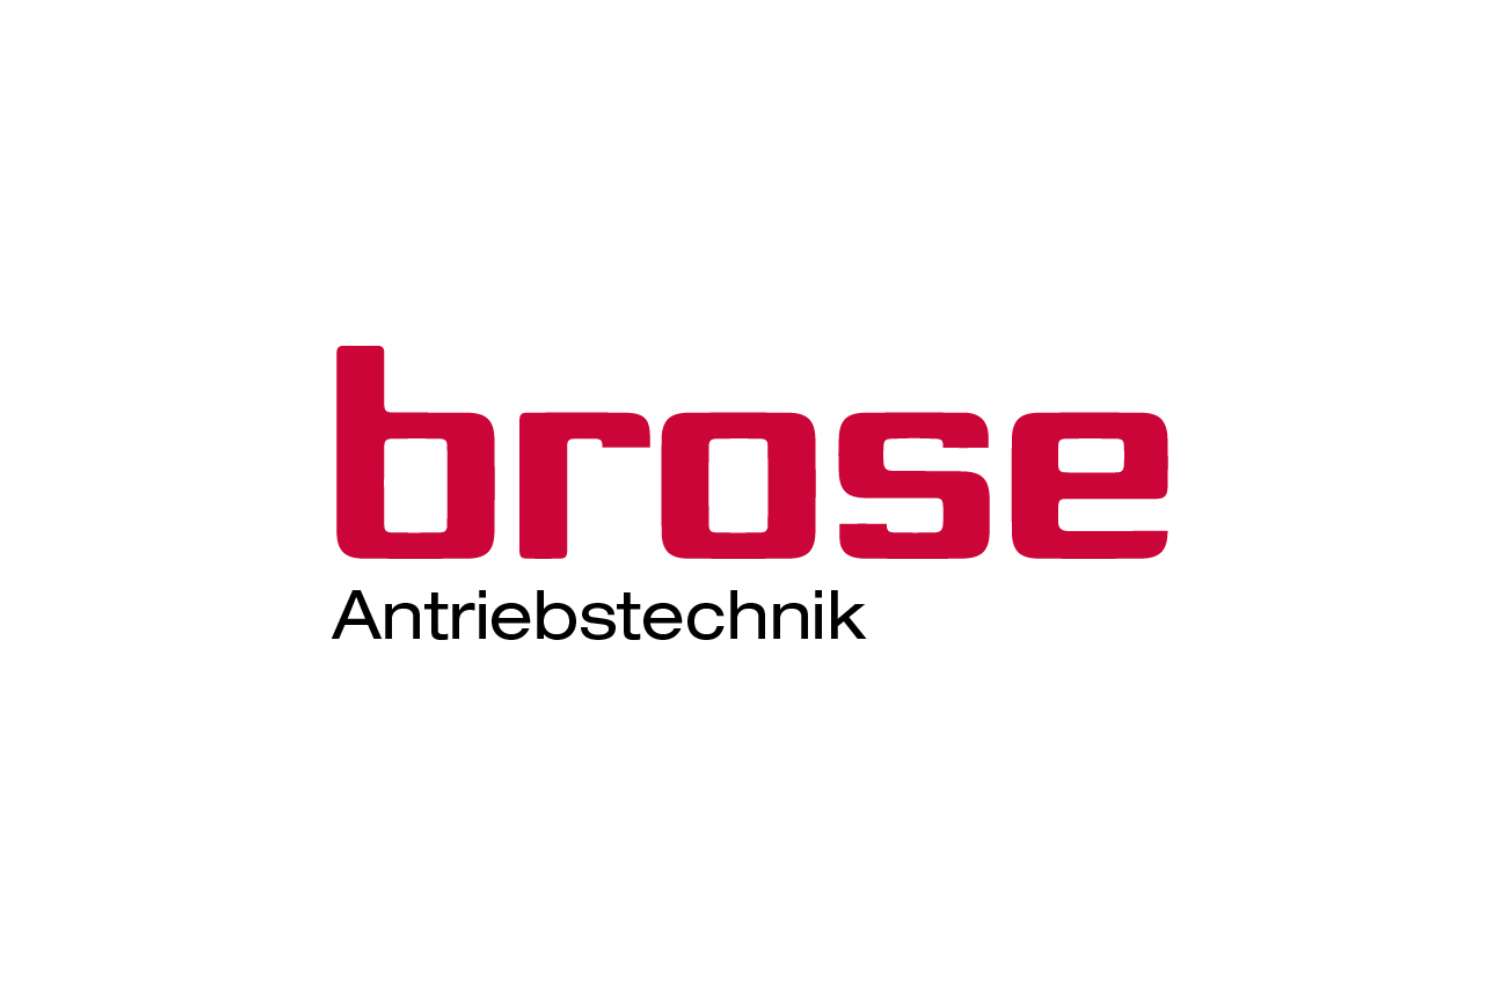 Brose Antriebstechnik Logo